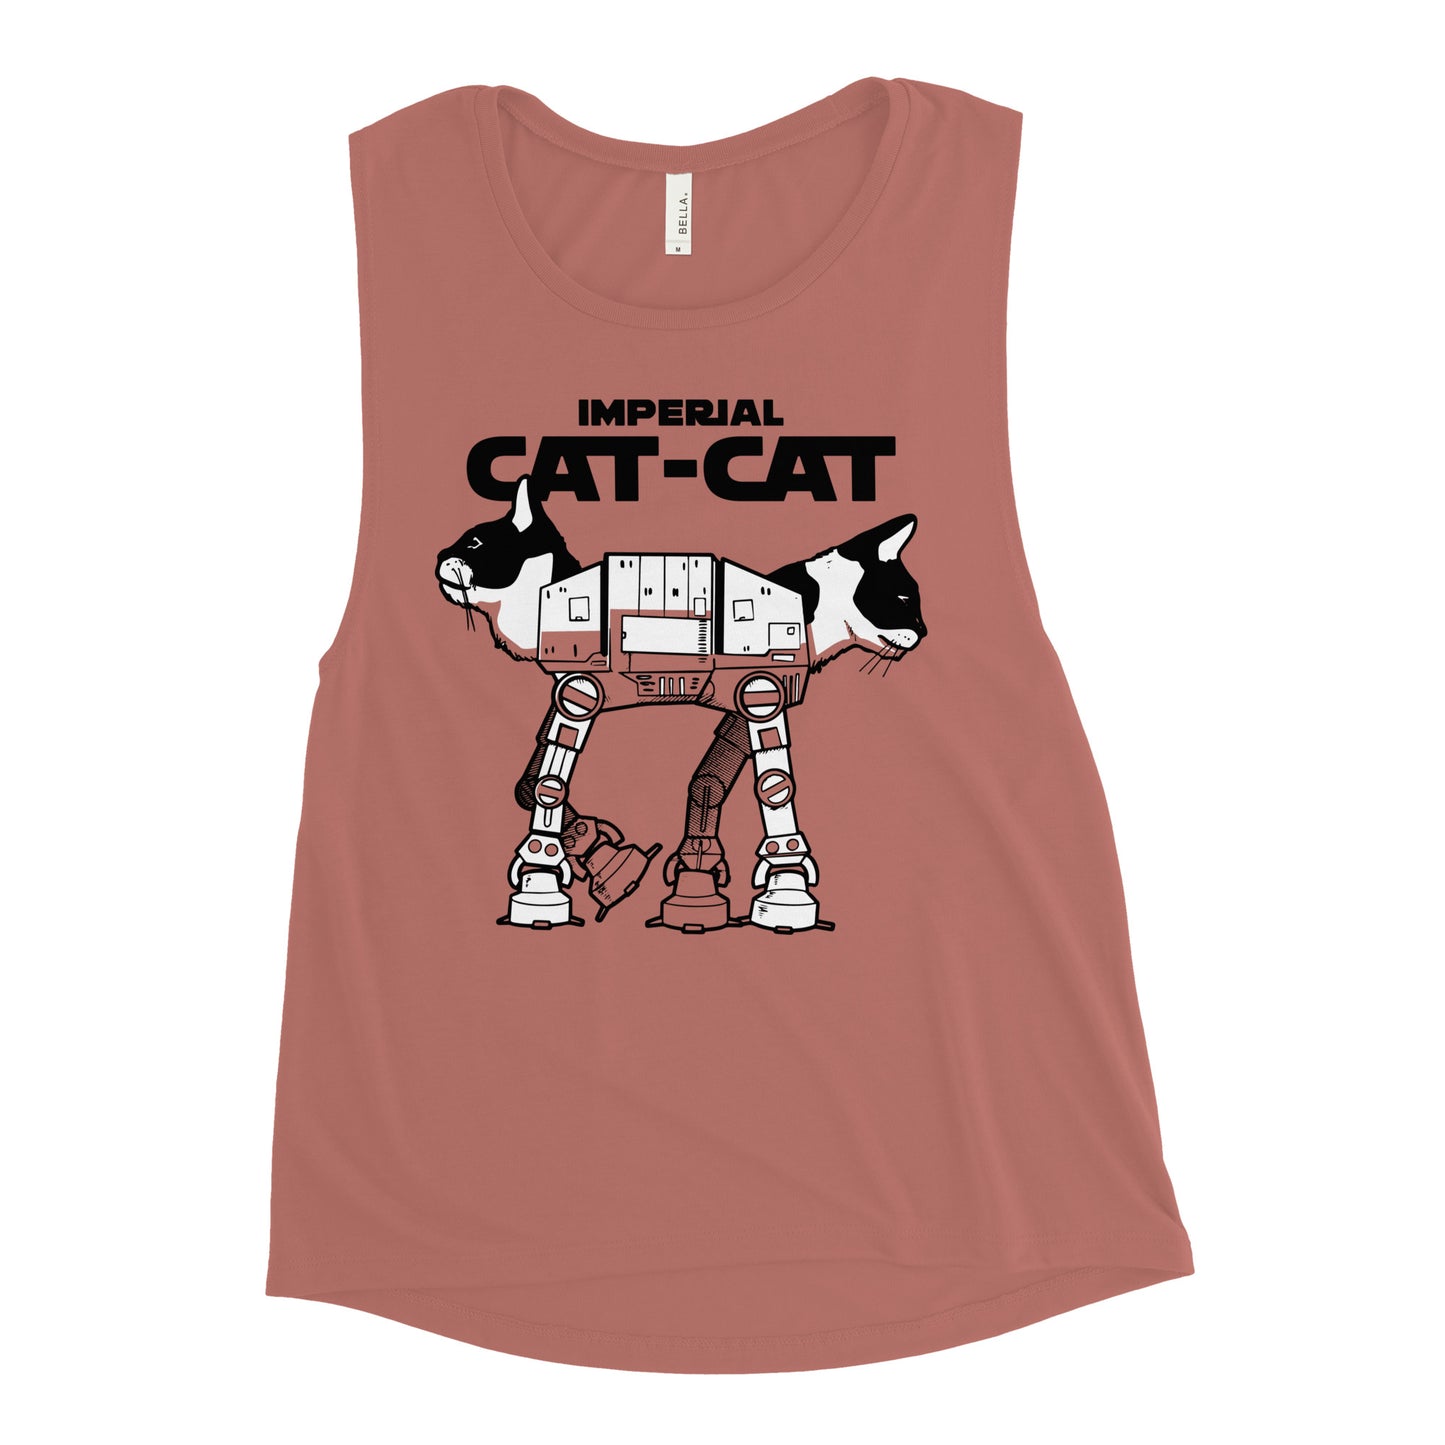 Cat-Cat Women's Muscle Tank